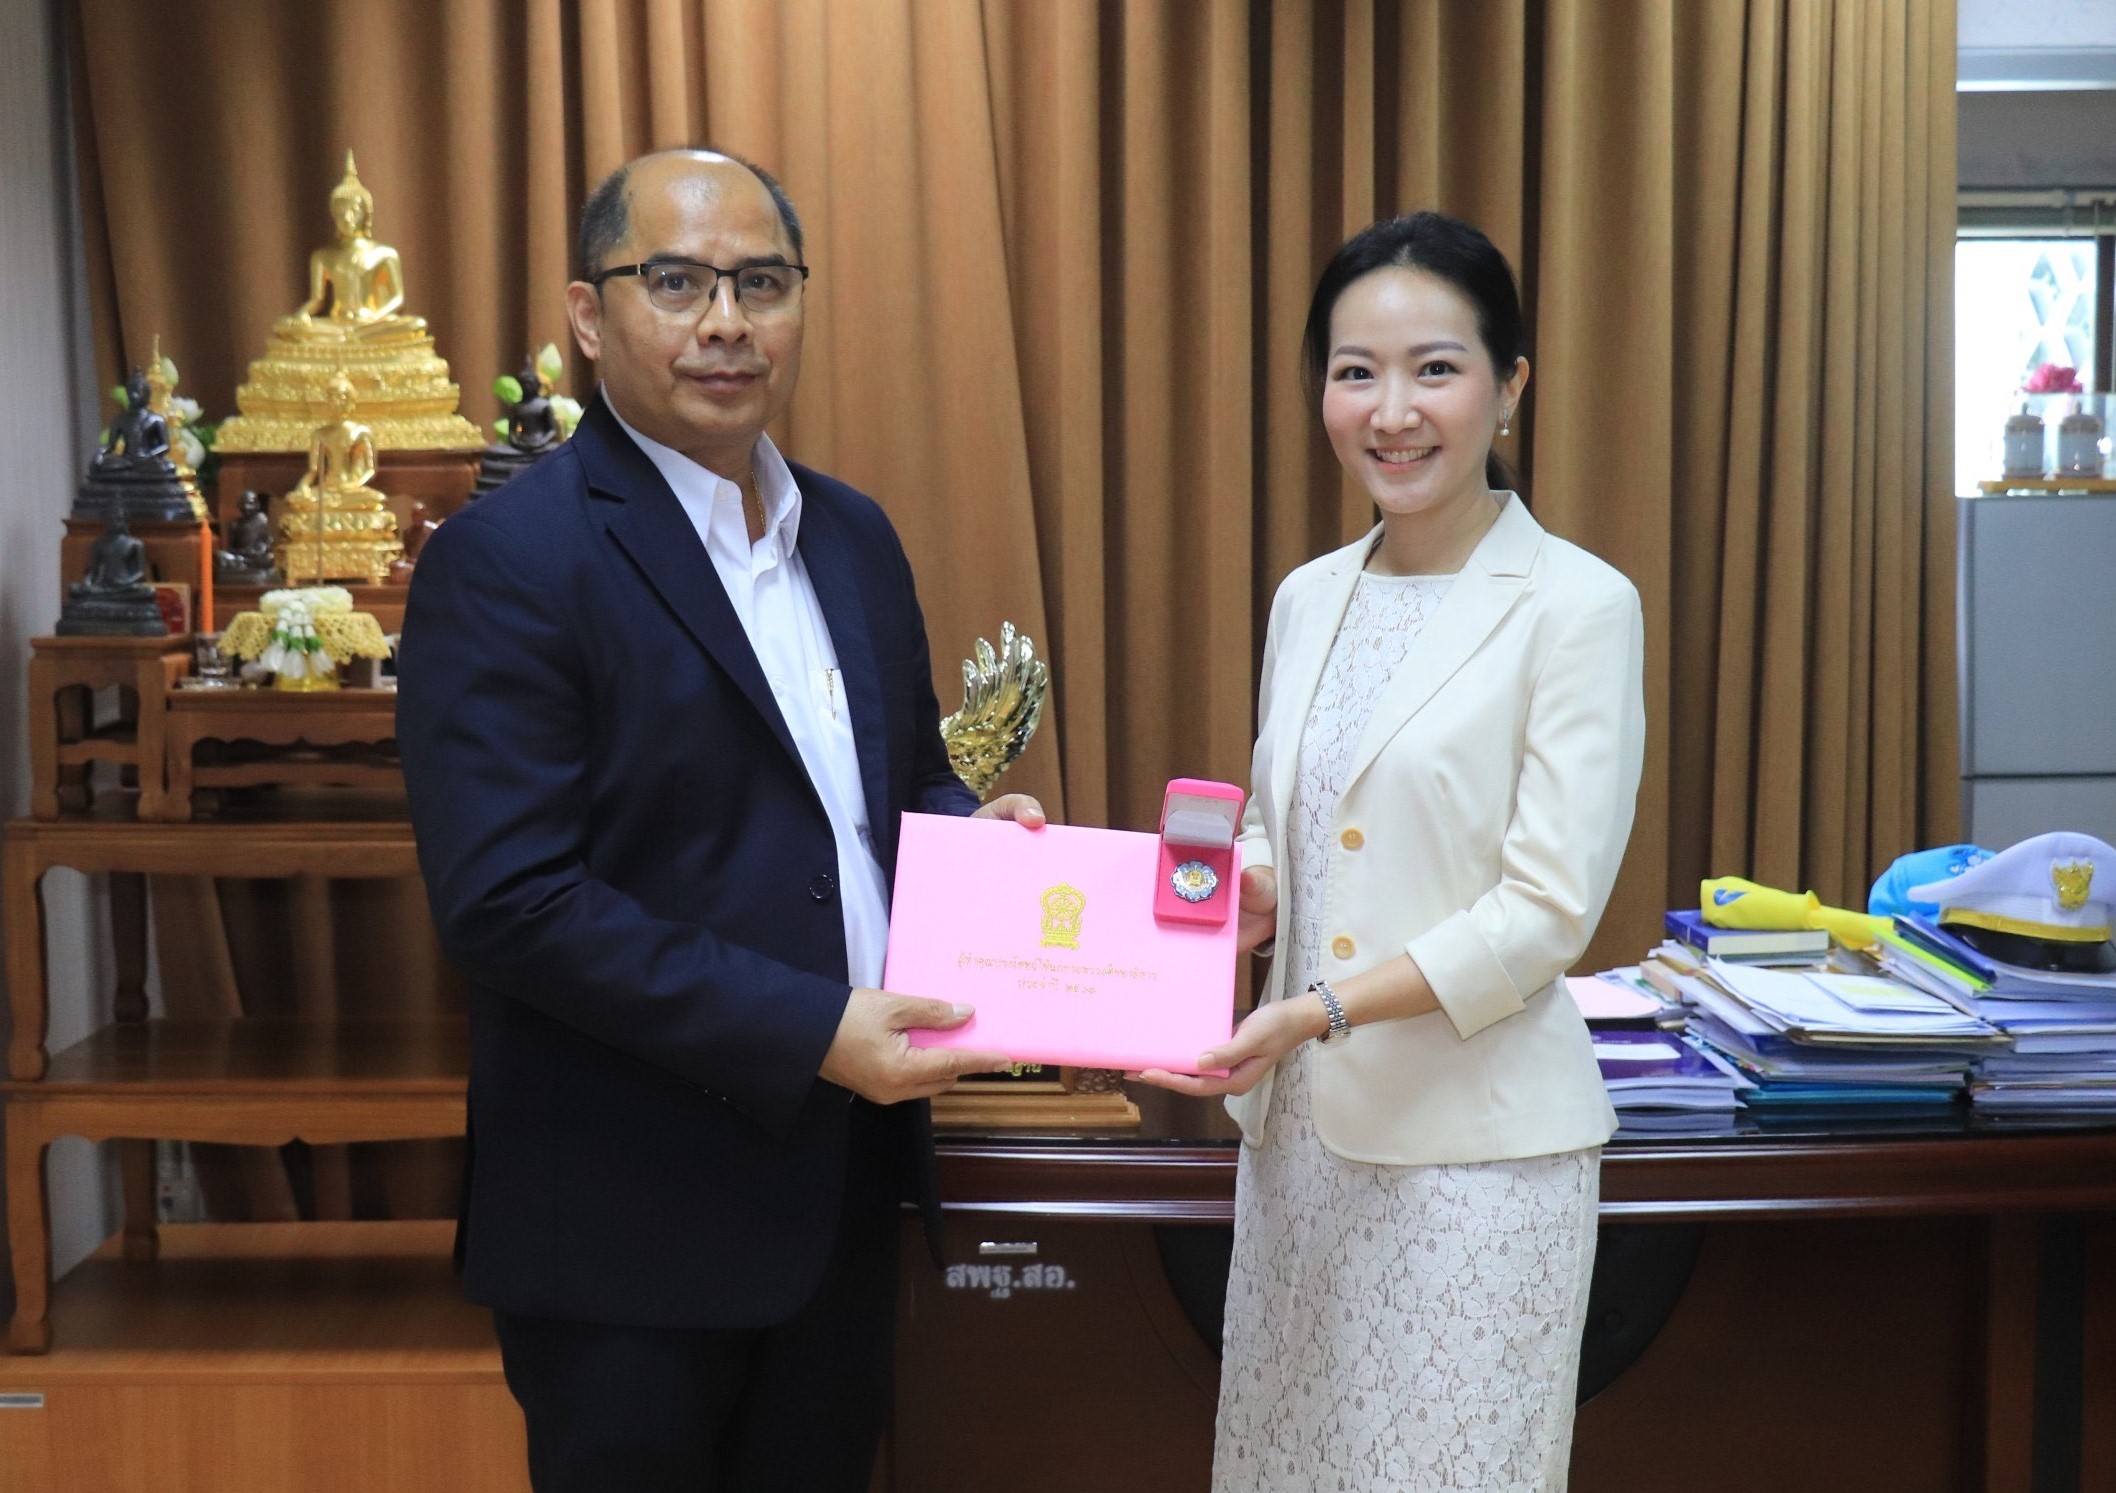 มอนเดลีซ ประเทศไทย รับรางวัลผู้ทำคุณประโยชน์แก่กระทรวงศึกษาธิการ ประจำปี 2563 ในฐานะกำลังสำคัญสนับสนุนภาคการศึกษาไทย ผ่านโครงการโรงเรียนสุขหรรษา (Joy